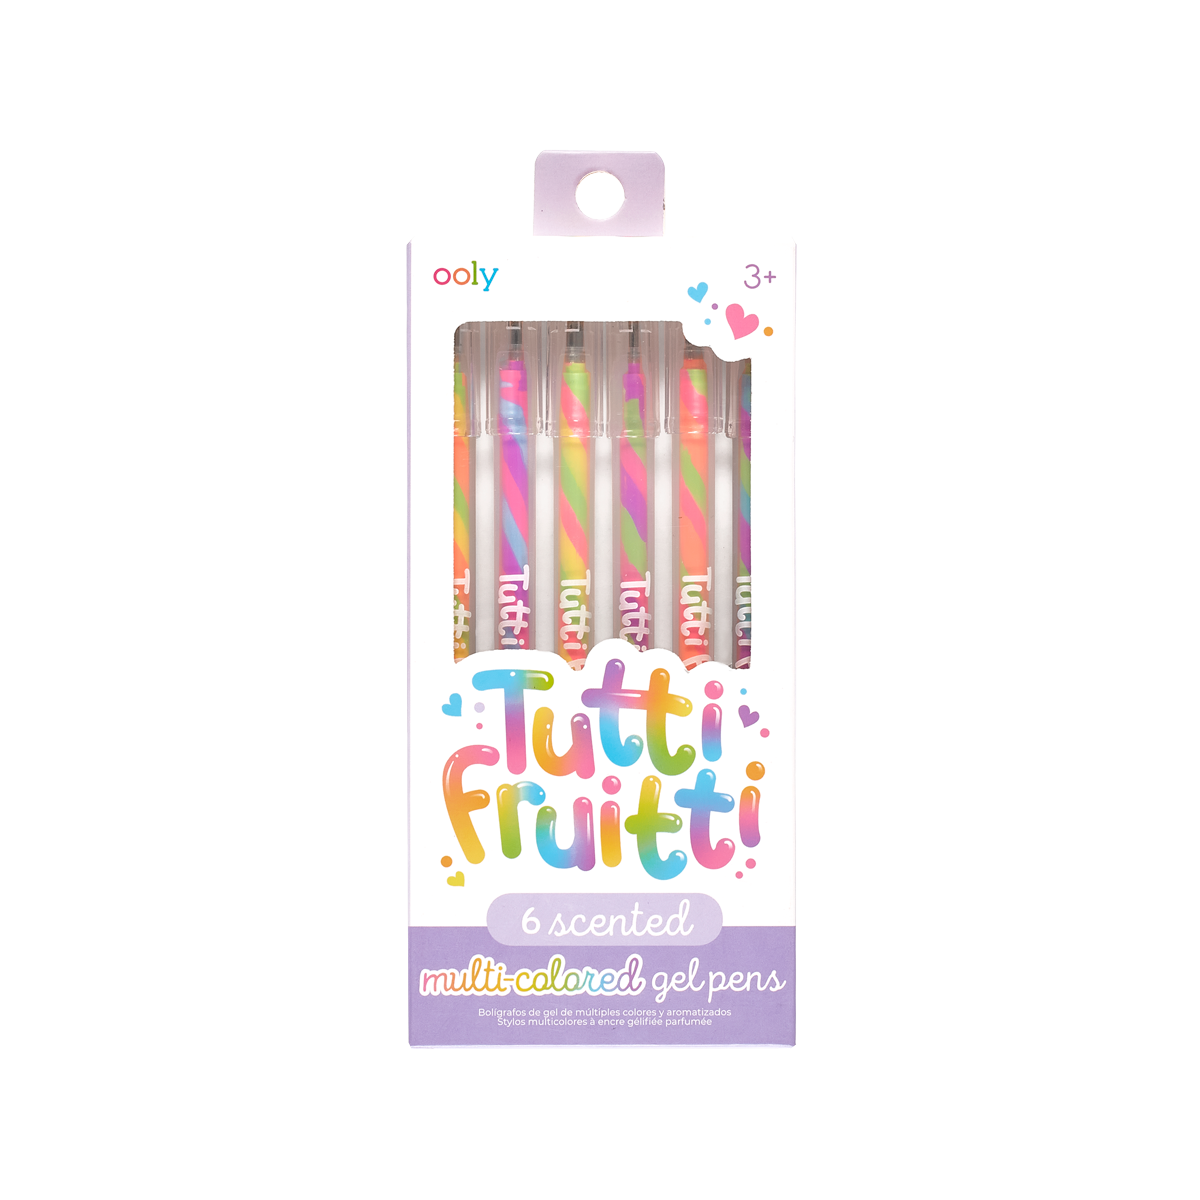 harmtty Gel Pen 4 in 1 Multi-functional Bubble Maker Roller Stamper  Stationery Cartoon Fruit Pattern Plastic Writing Pen School Supplies,Pink